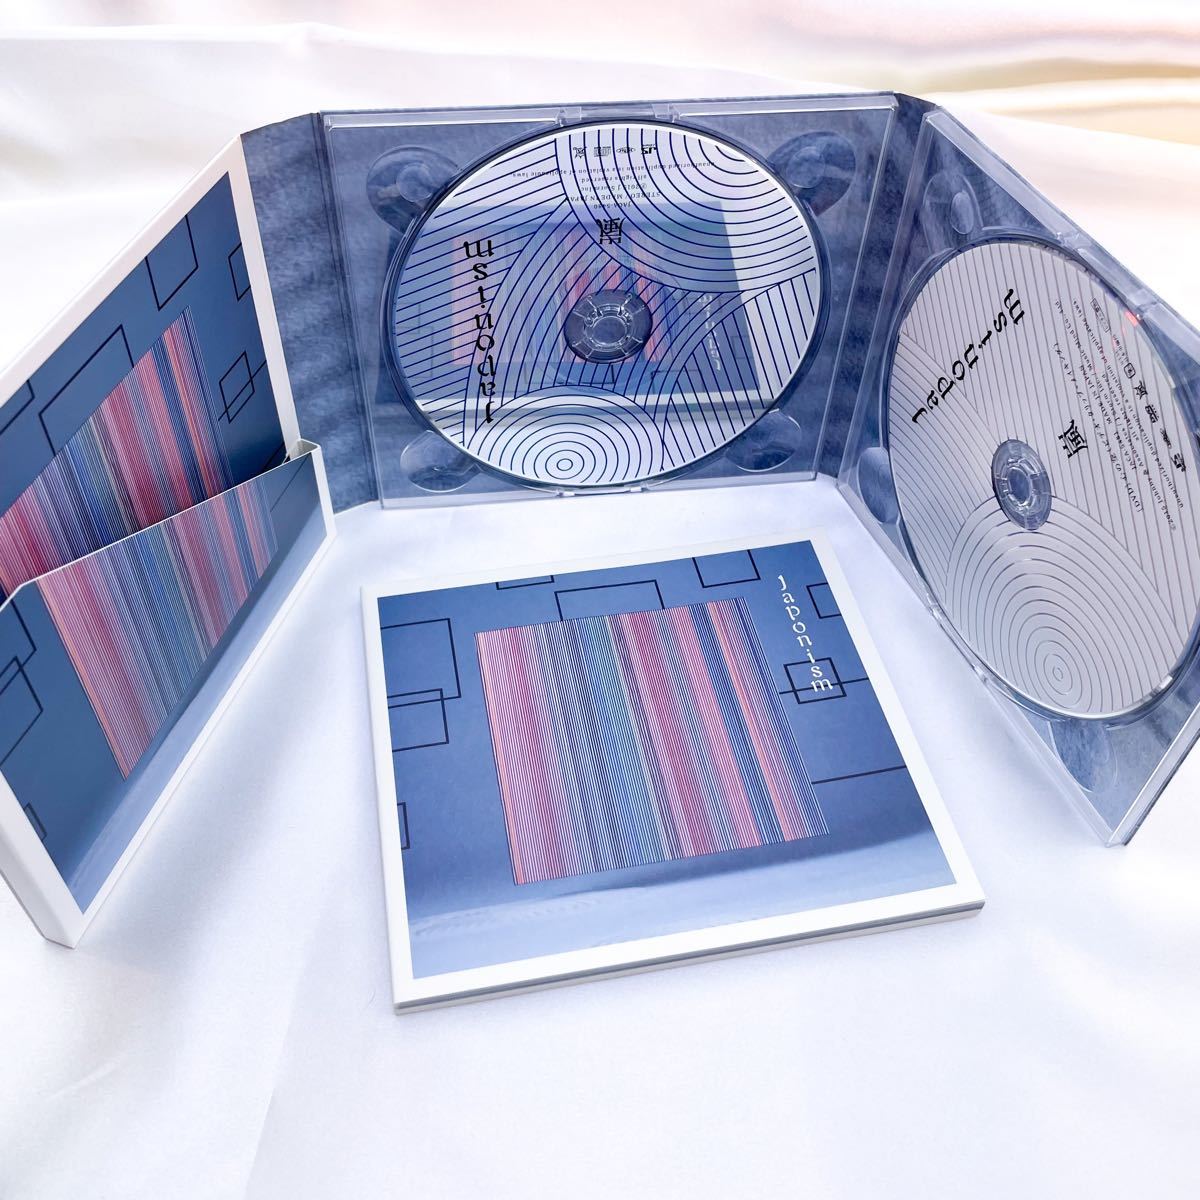 嵐 ツアー DVD 通常盤 Japonism ＆ アルバム CD 初回盤 セット